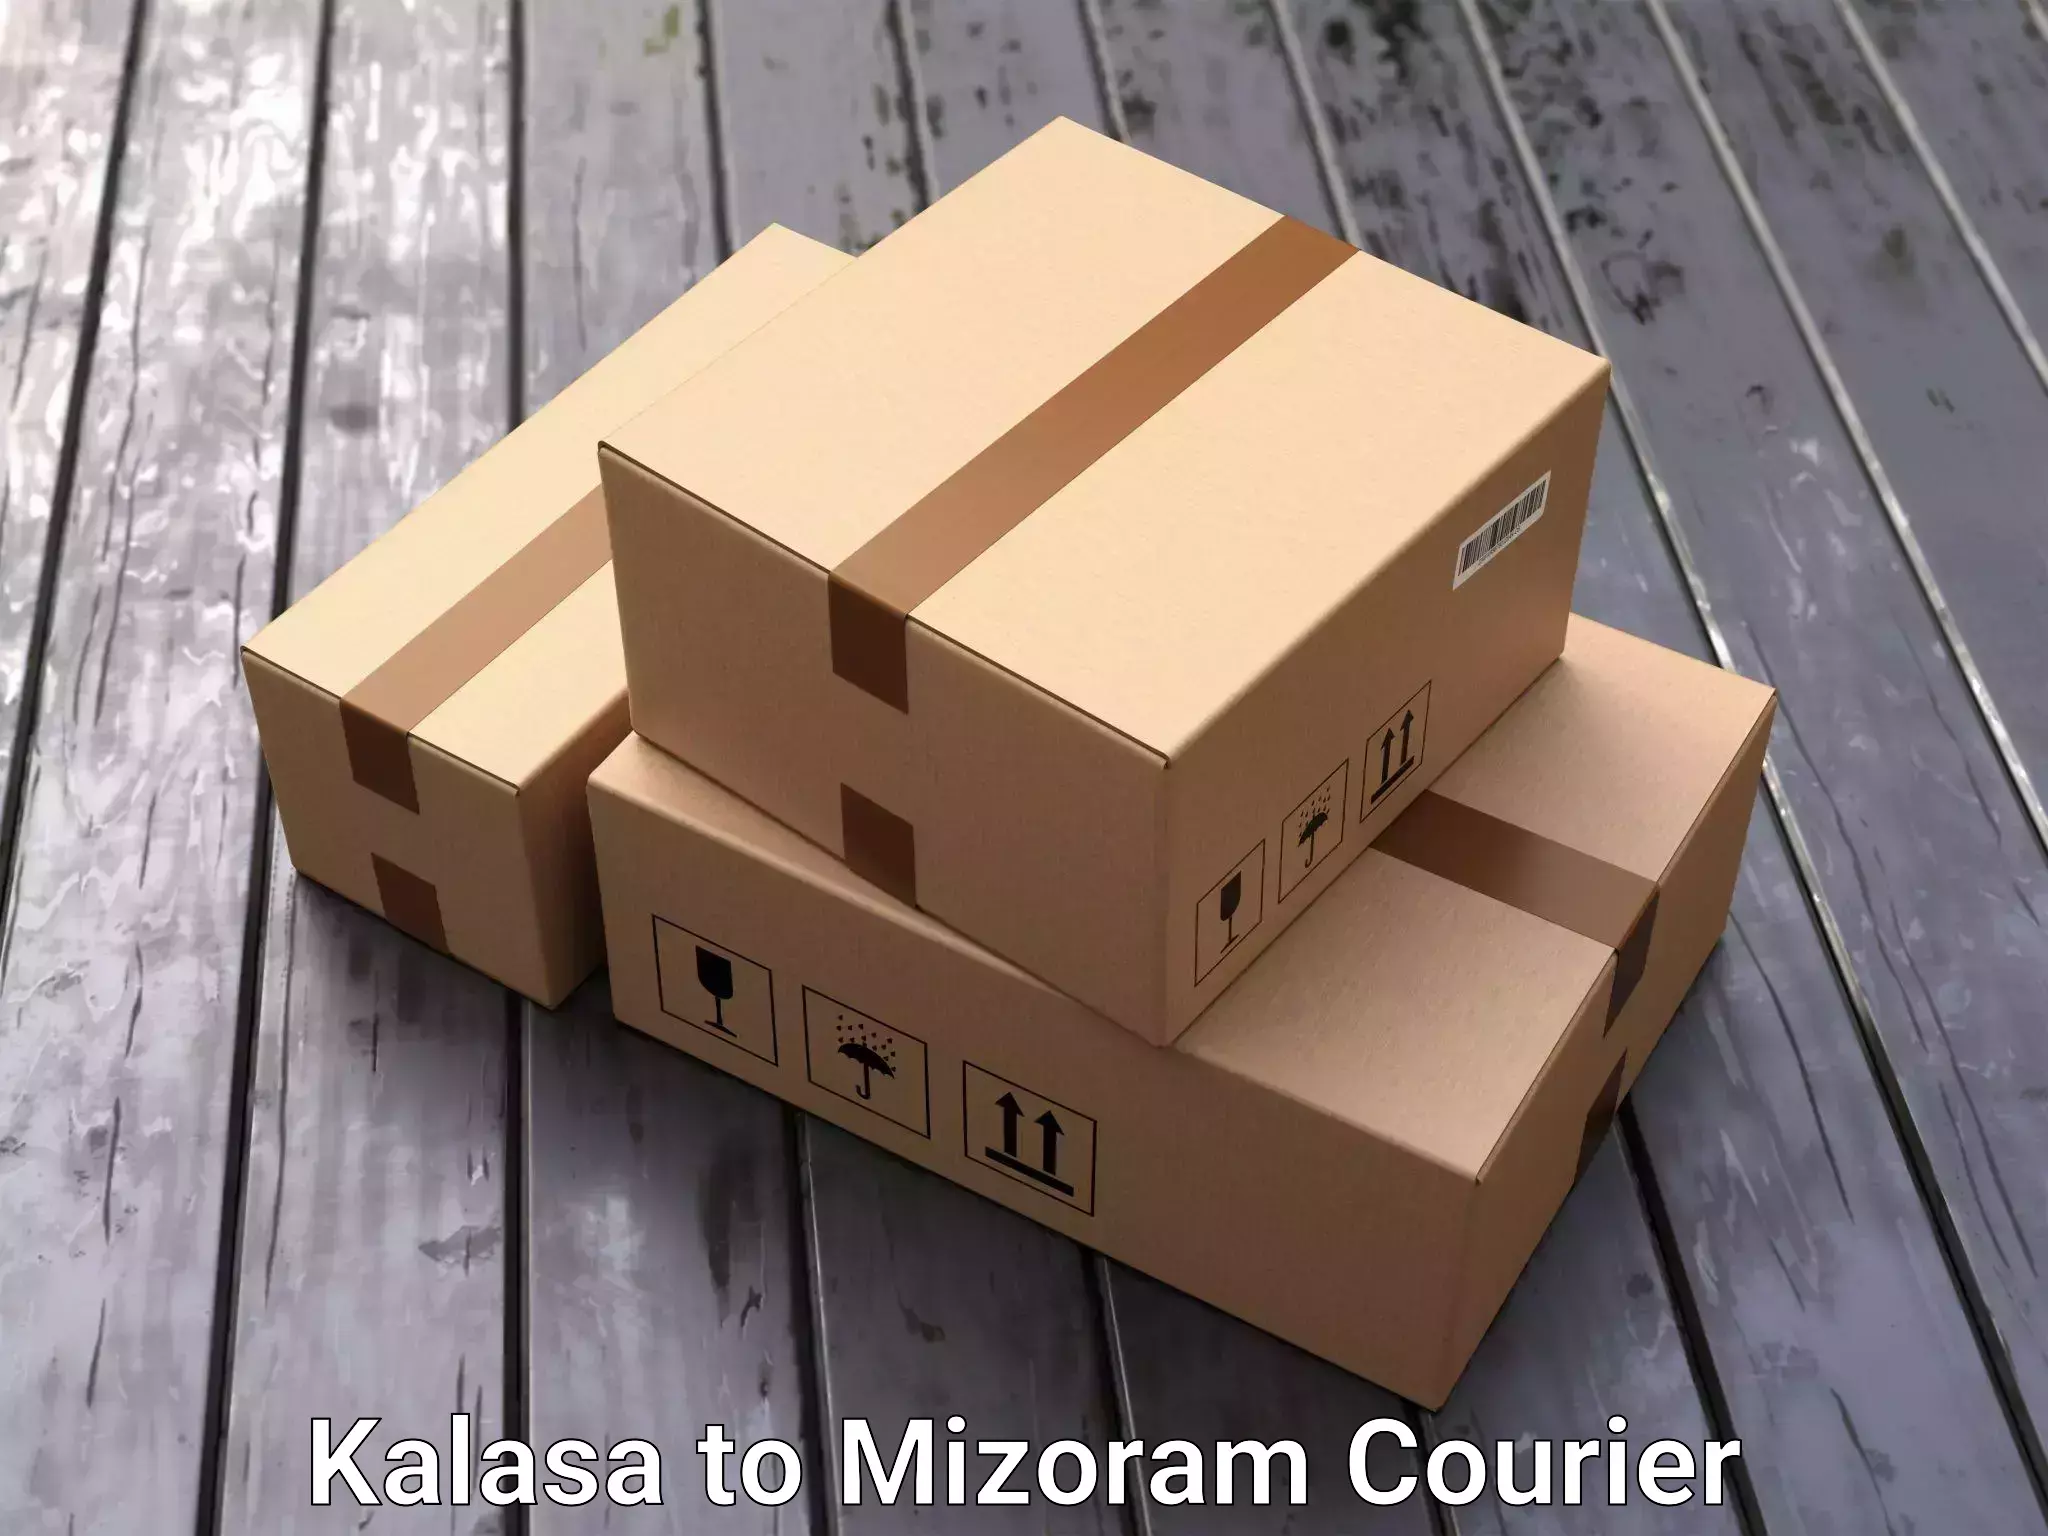 Quality moving and storage Kalasa to Mizoram